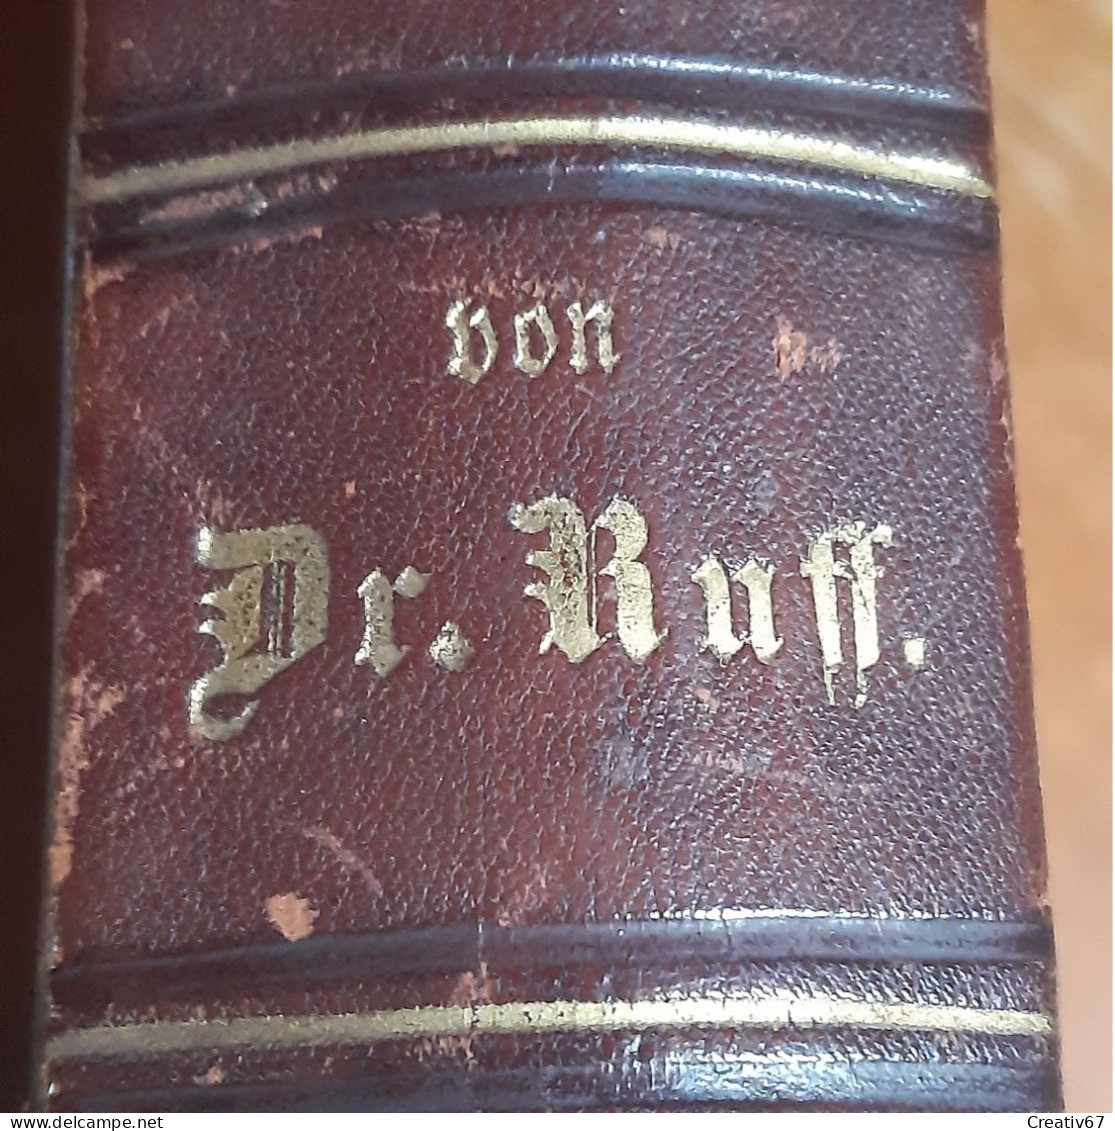 Gesundheit Lexikon Von Dr. Ruff 1882 Illustré Relié Cuir Très Bon état Selon Photos (cs) - Dictionnaires